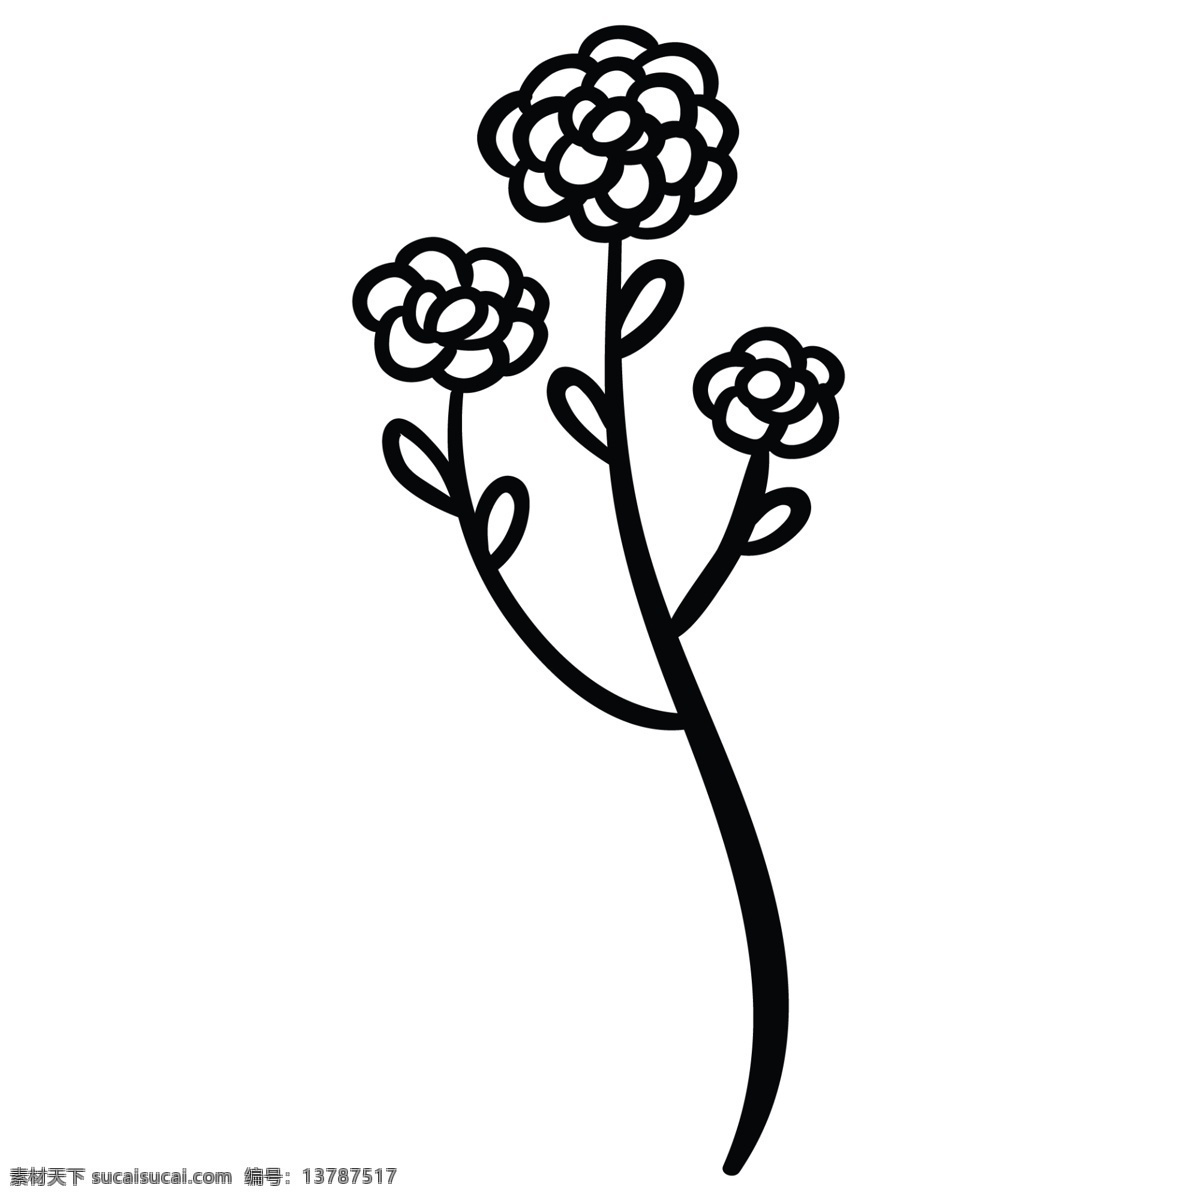 支 简 笔画 花朵 枝桠 花朵枝桠 卡通 圆点树枝 卡通树枝免抠 卡通花朵 简笔花朵 黑色 简笔画 手绘图案 绿色植物 植被 简笔画树枝